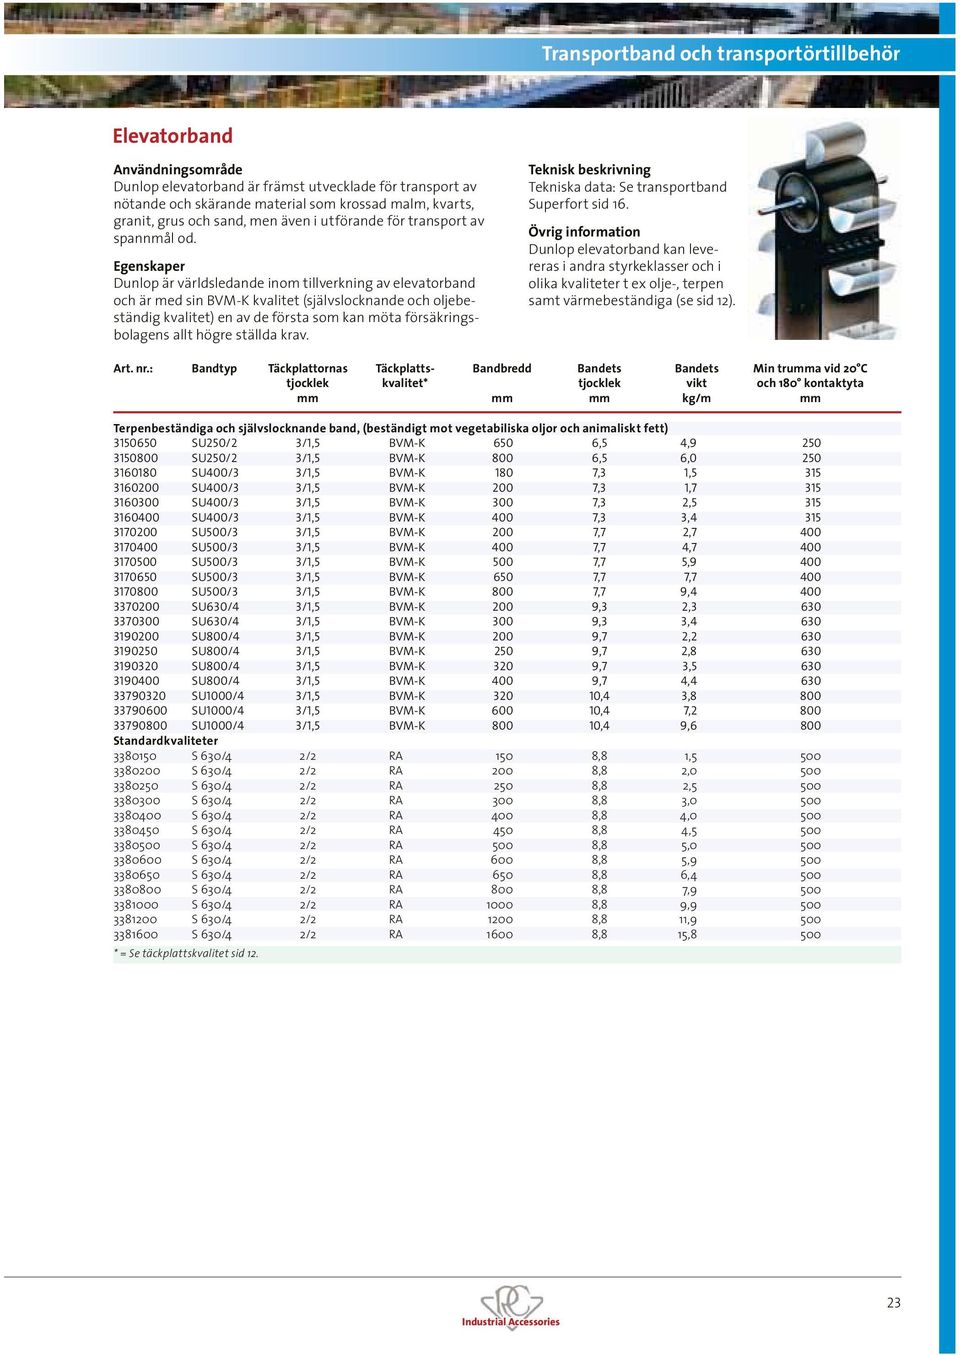 ställda krav. Tekniska data: Se transportband Superfort sid 16. Dunlop elevatorband kan levereras i andra styrkeklasser och i olika kvaliteter t ex olje-, terpen samt värmebeständiga (se sid 12). Art.